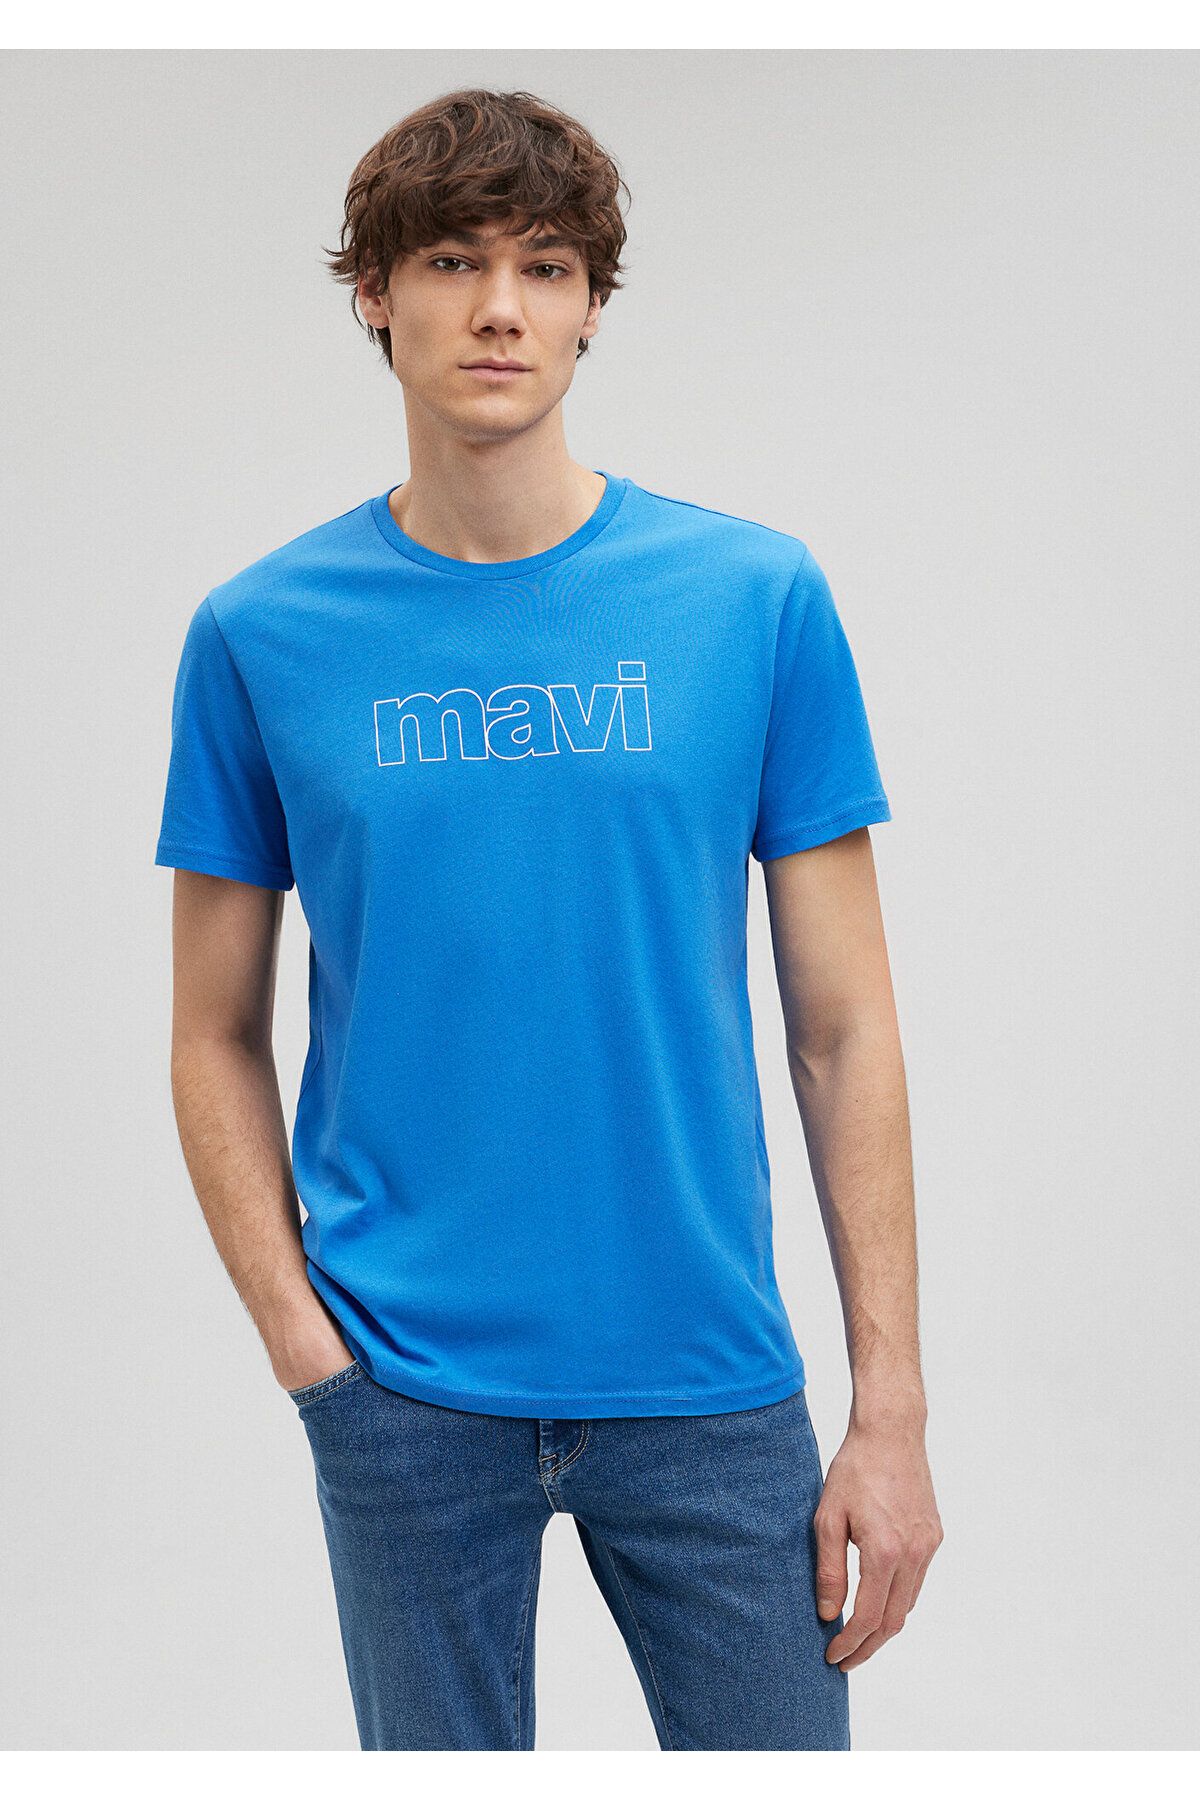 Mavi Logo Baskılı Mavi Tişört Slim Fit / Dar Kesim 065781-81347